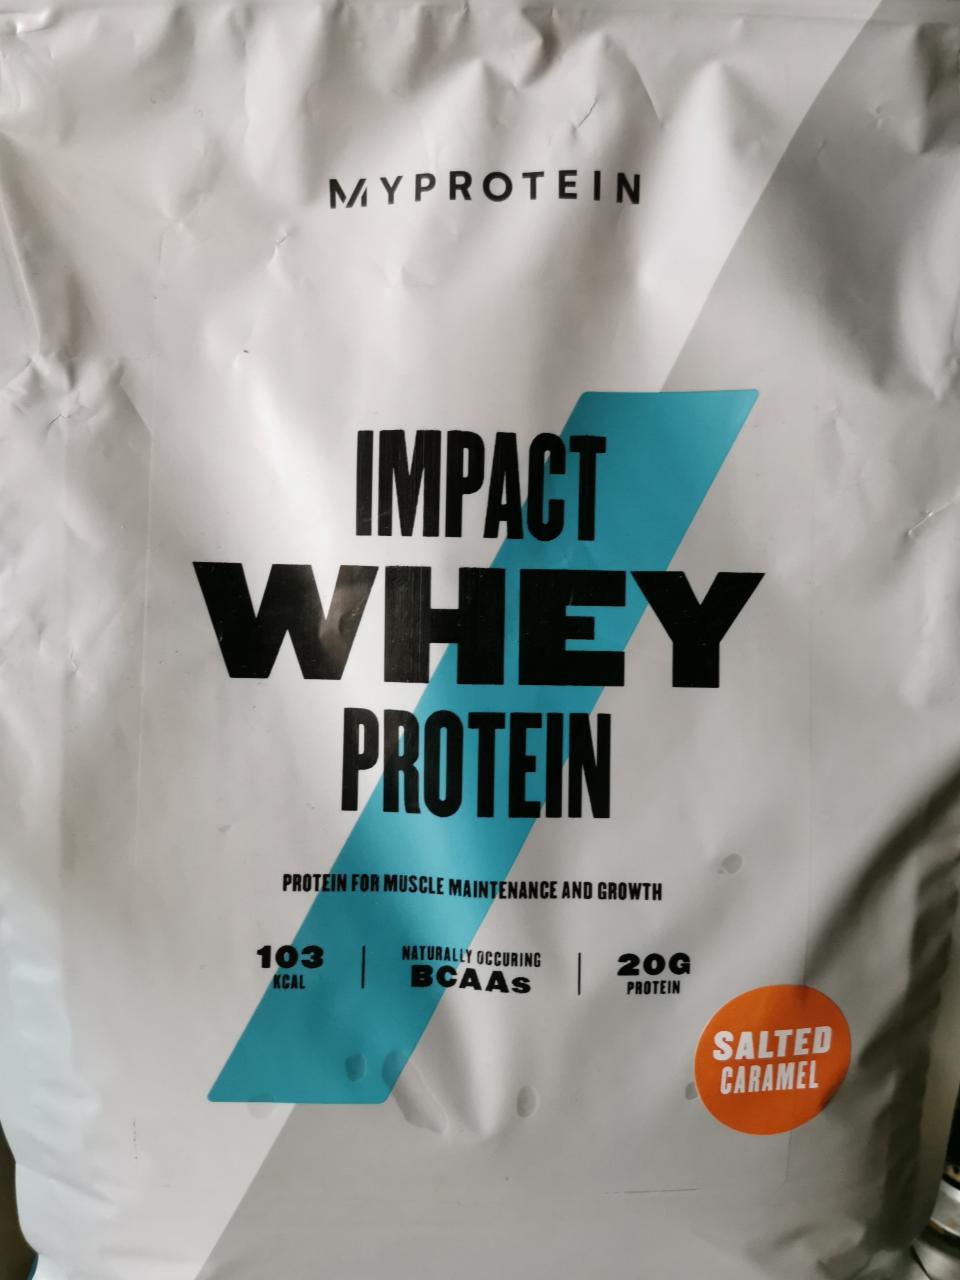 Fotografie - Impact Whey 20g Protein Salted caramel MyProtein